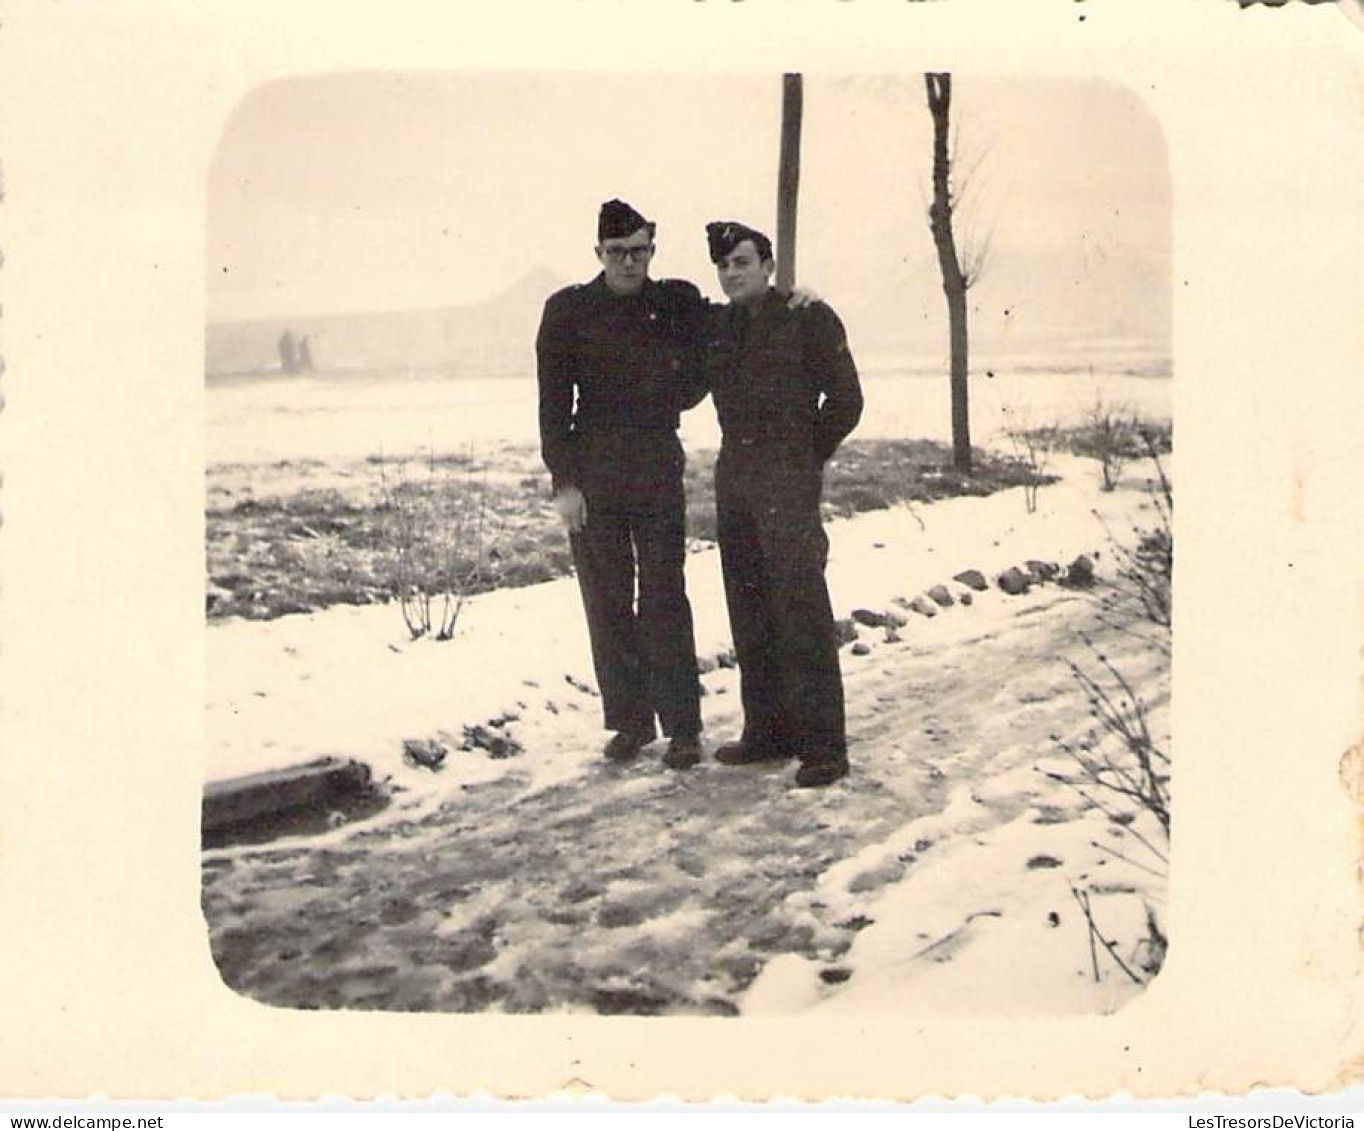 Photographie - Lot de 26 Photos militaires - Freibourg - Cognac - Service militaire 1949/1950